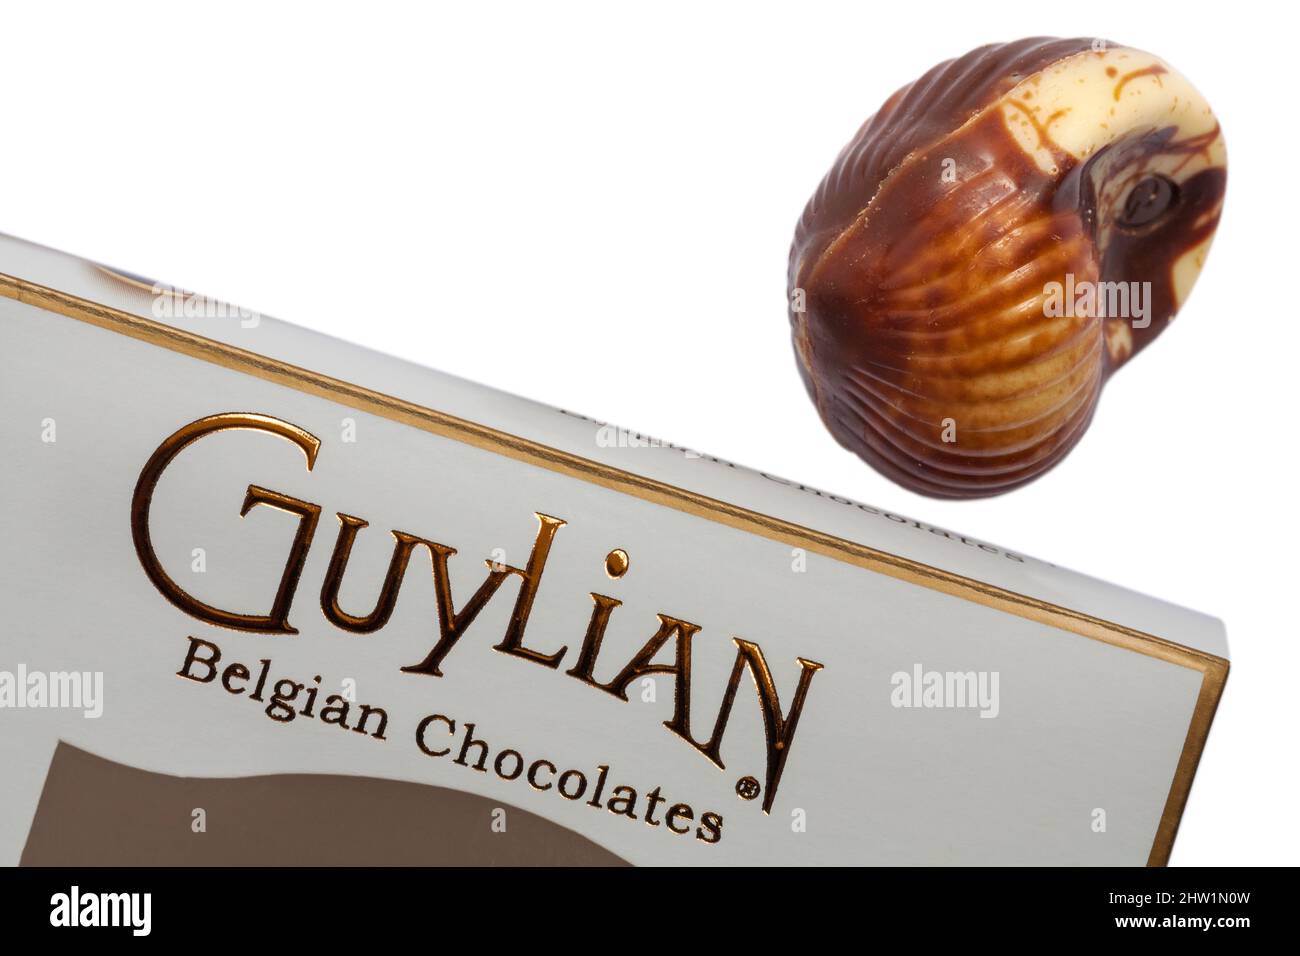 Guylian Belgian chocolates seashells chocolate seashell with box set on white background - finest Belgian chocolates with hazelnut praline filling Stock Photo